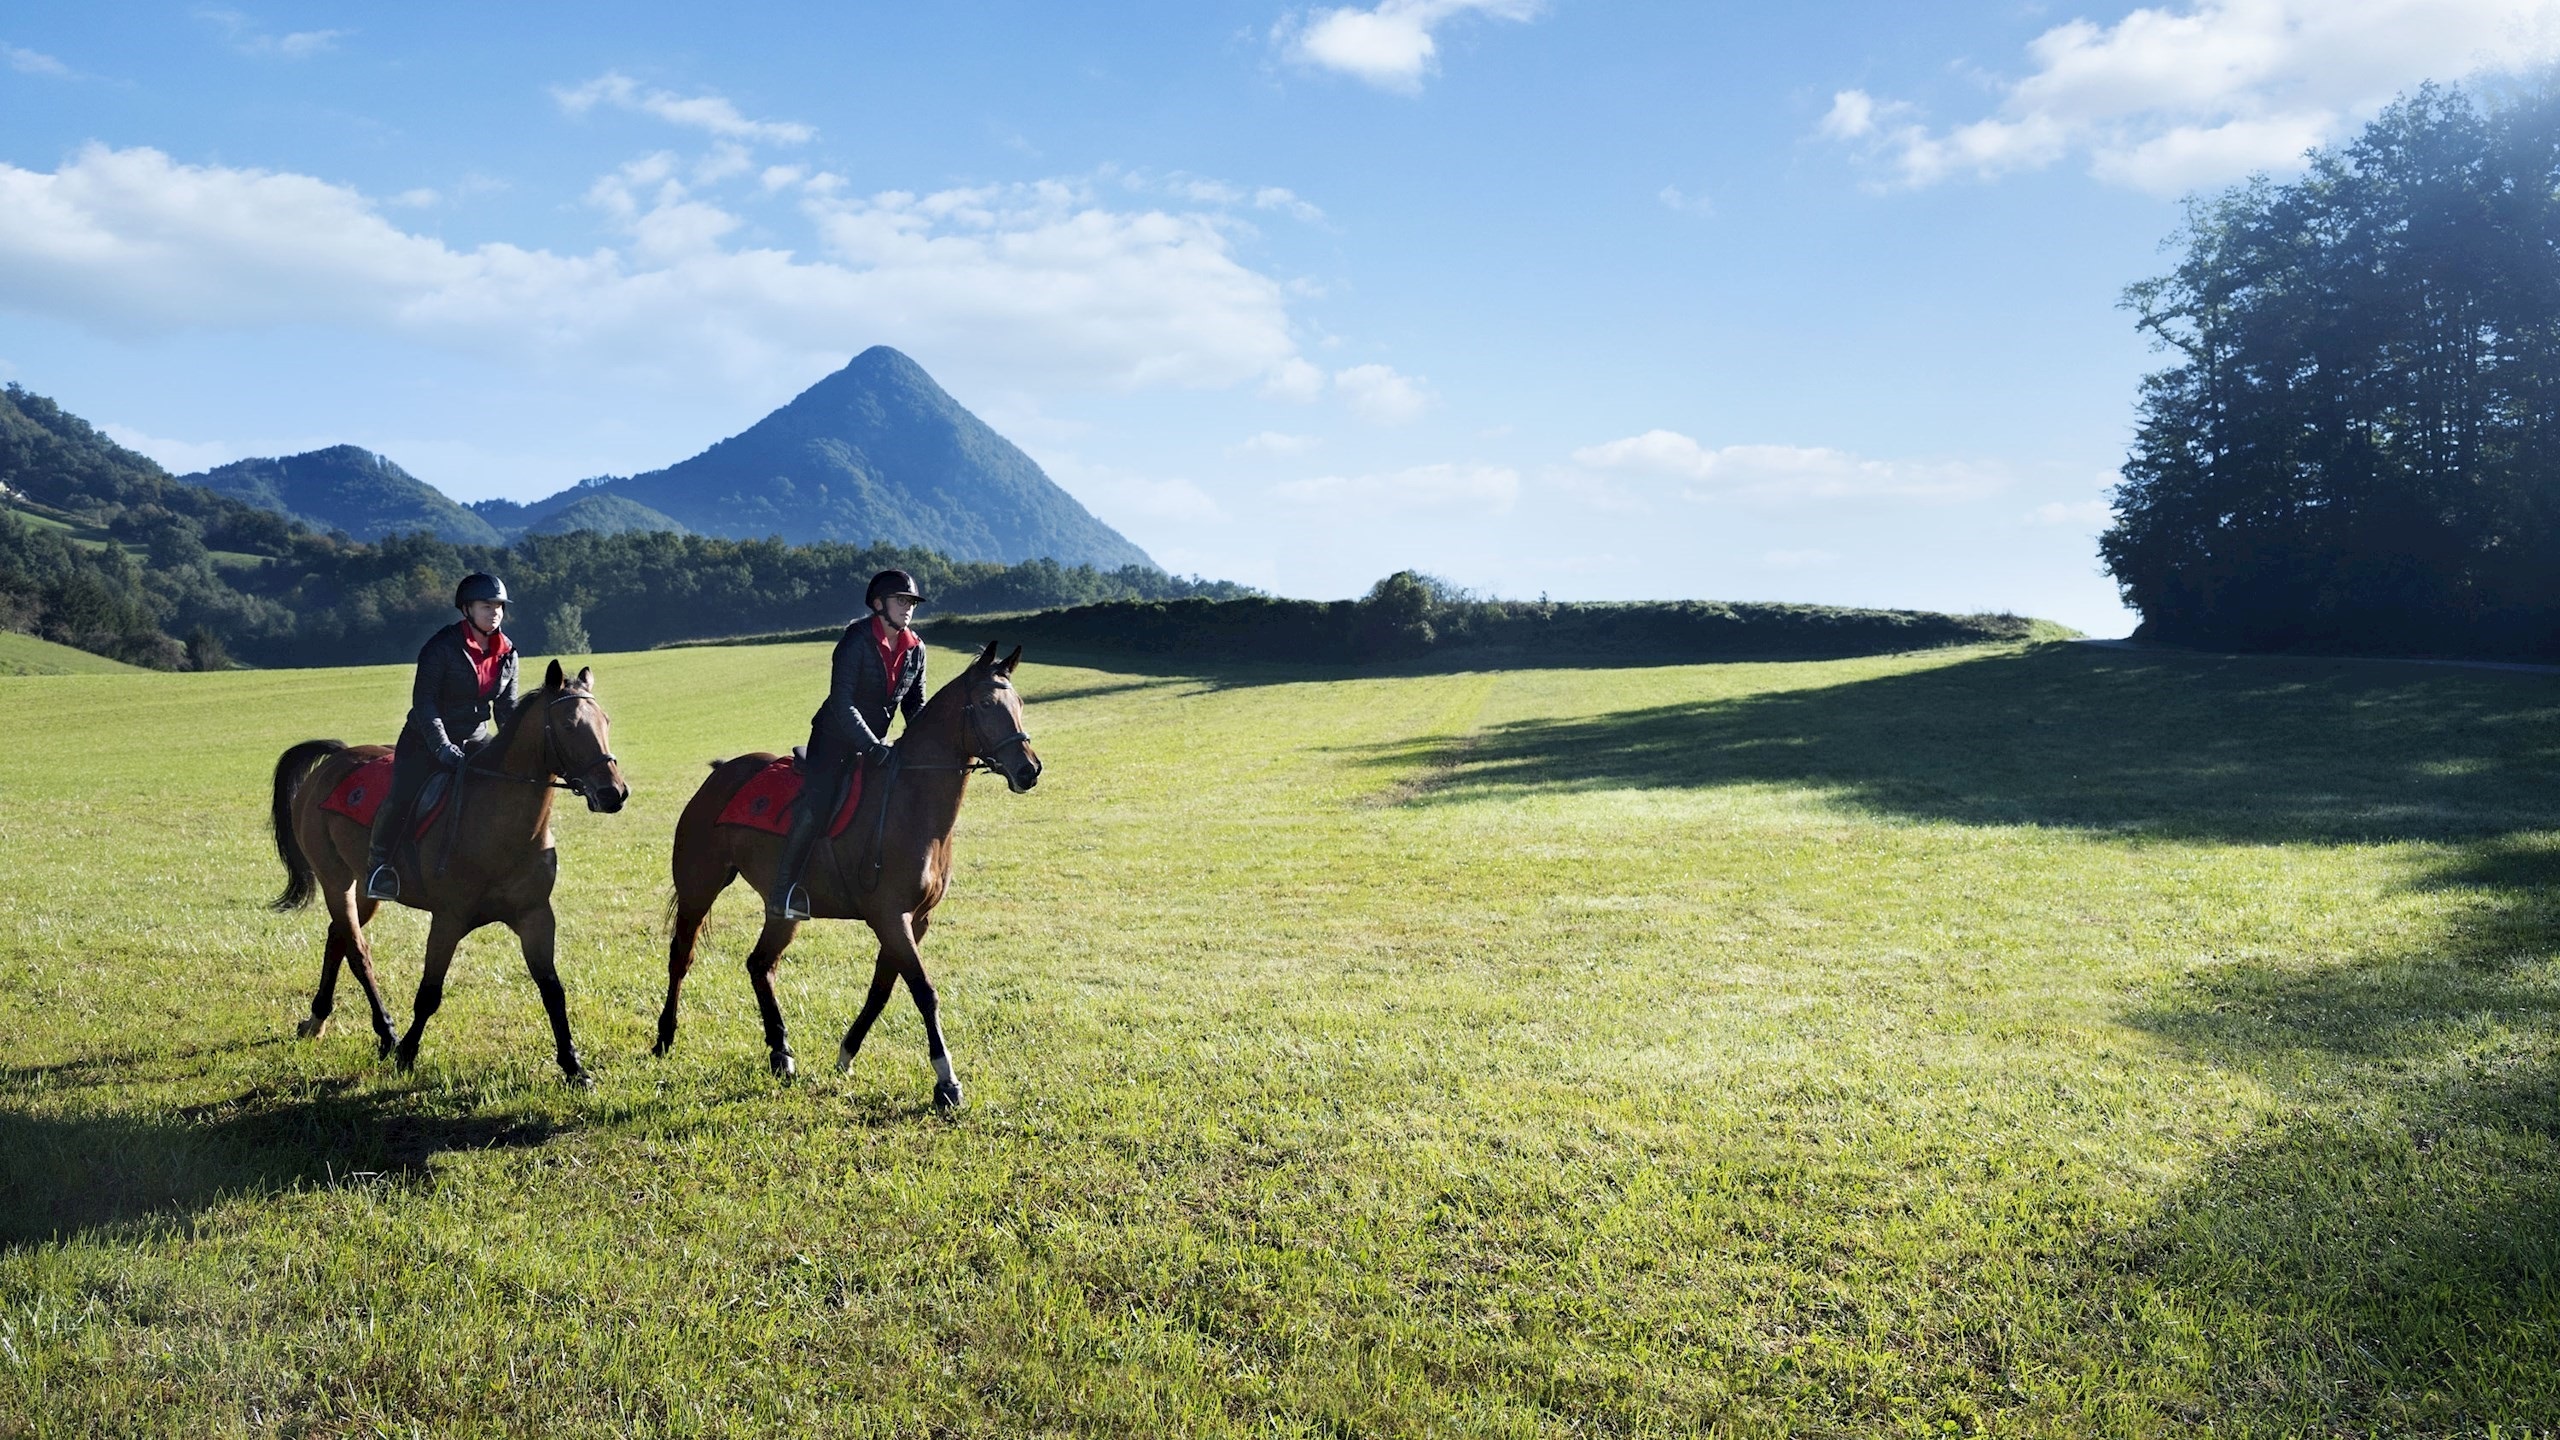 dva jahača na konjih na travniku